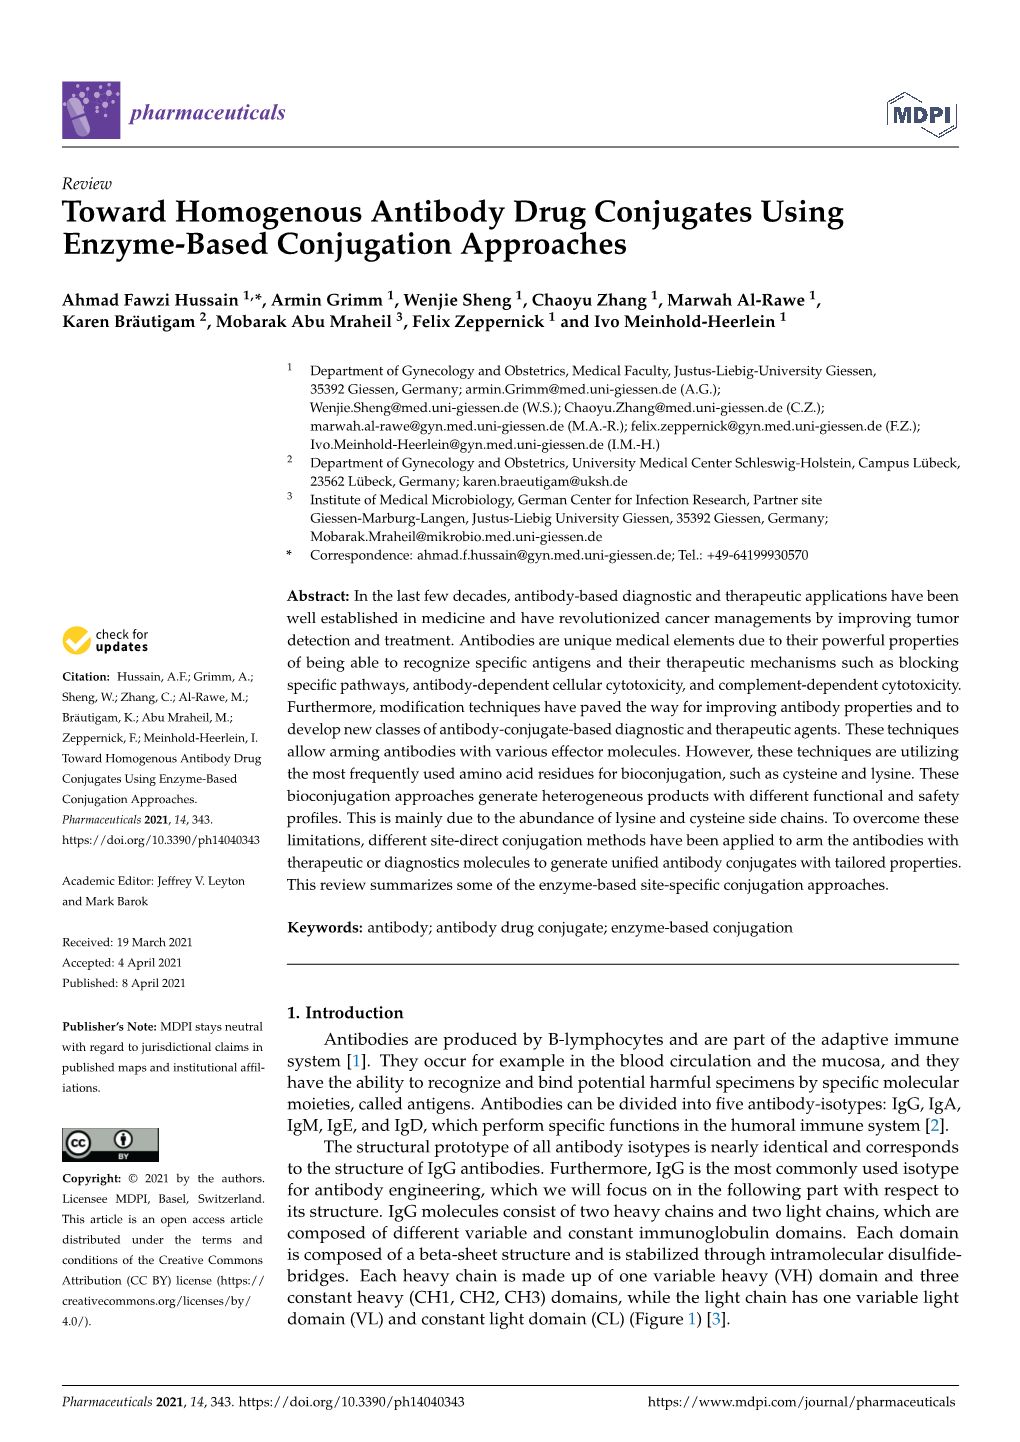 Toward Homogenous Antibody Drug Conjugates Using Enzyme-Based Conjugation Approaches